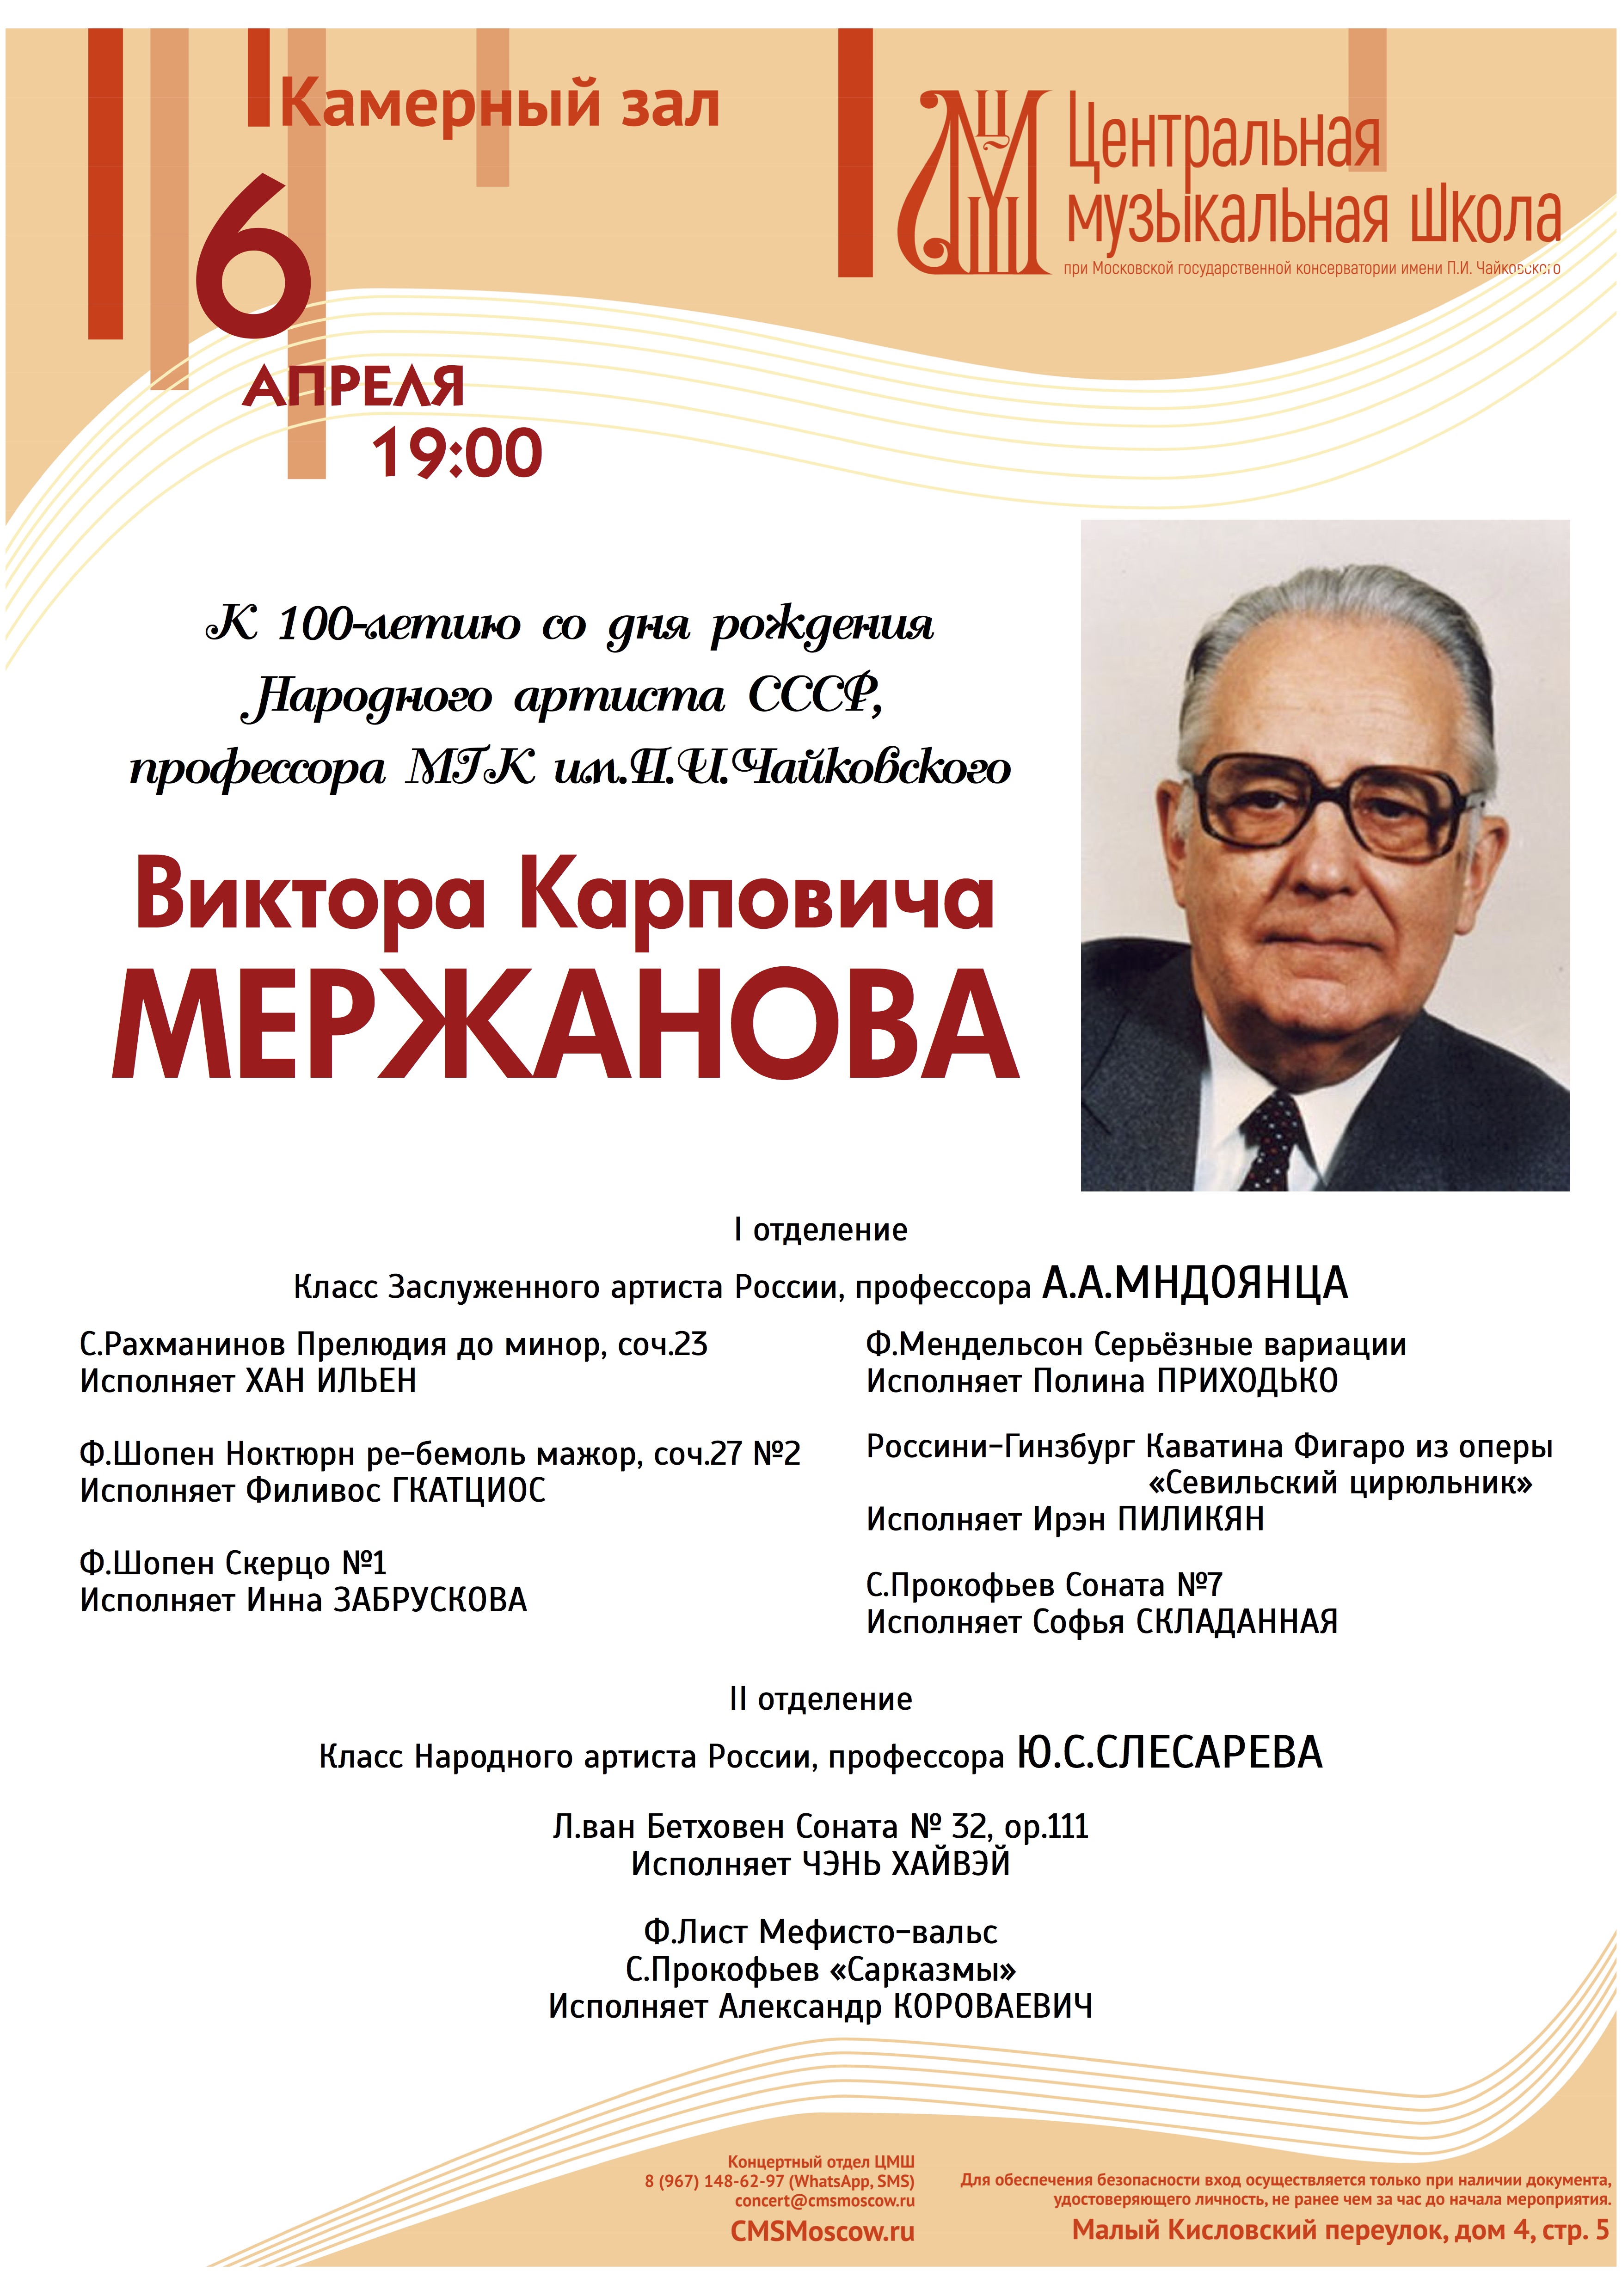 К 100-летию со дня рождения - афиша